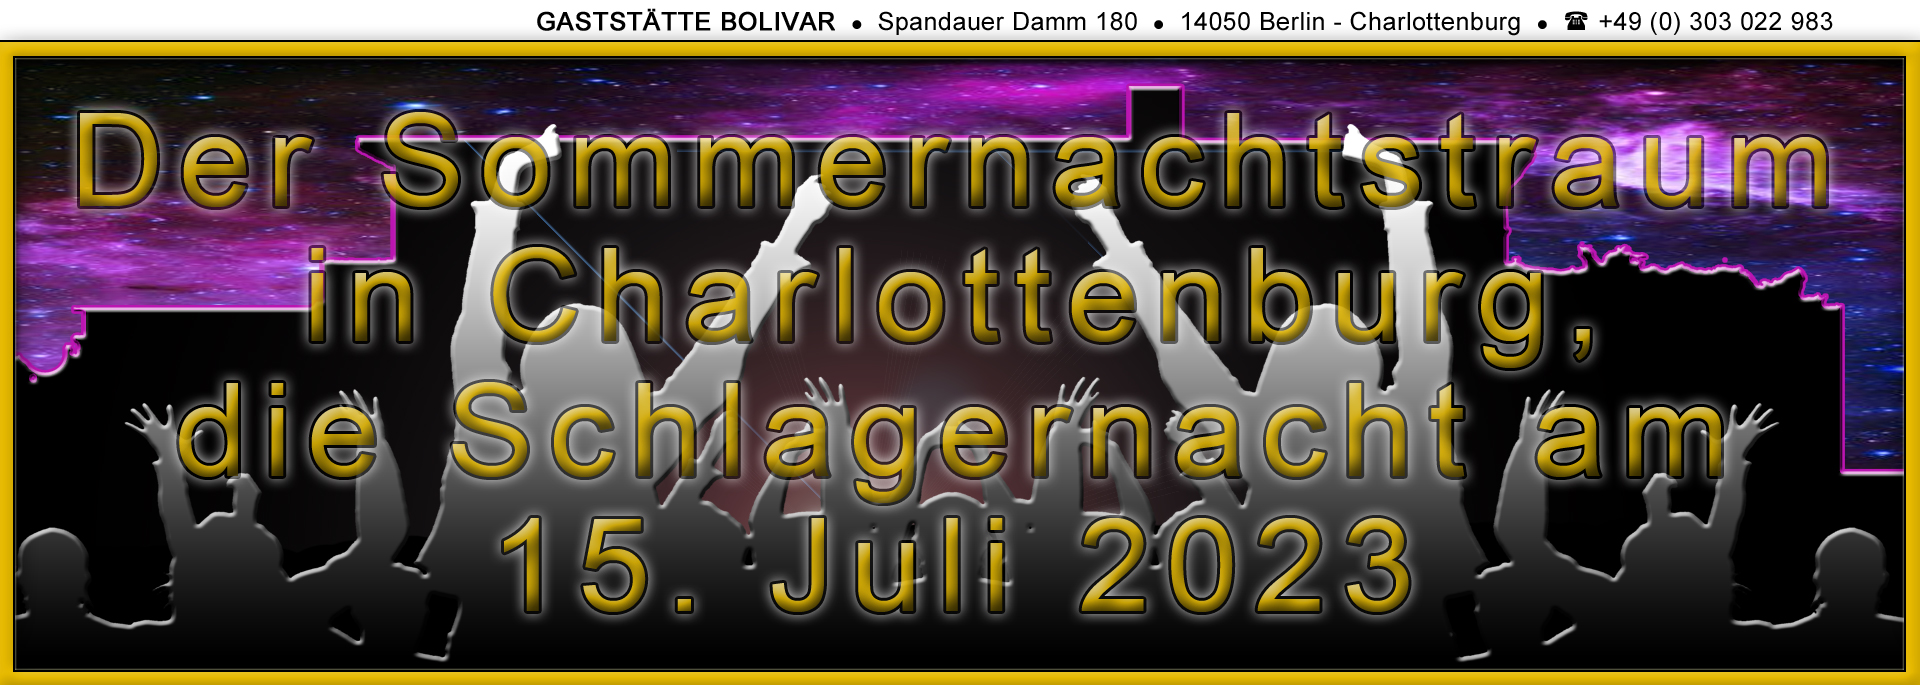 gaststaette-bolivar-berlin-charlottenburg-westend-schlagernacht-sommernachtstraum-2023-07-15